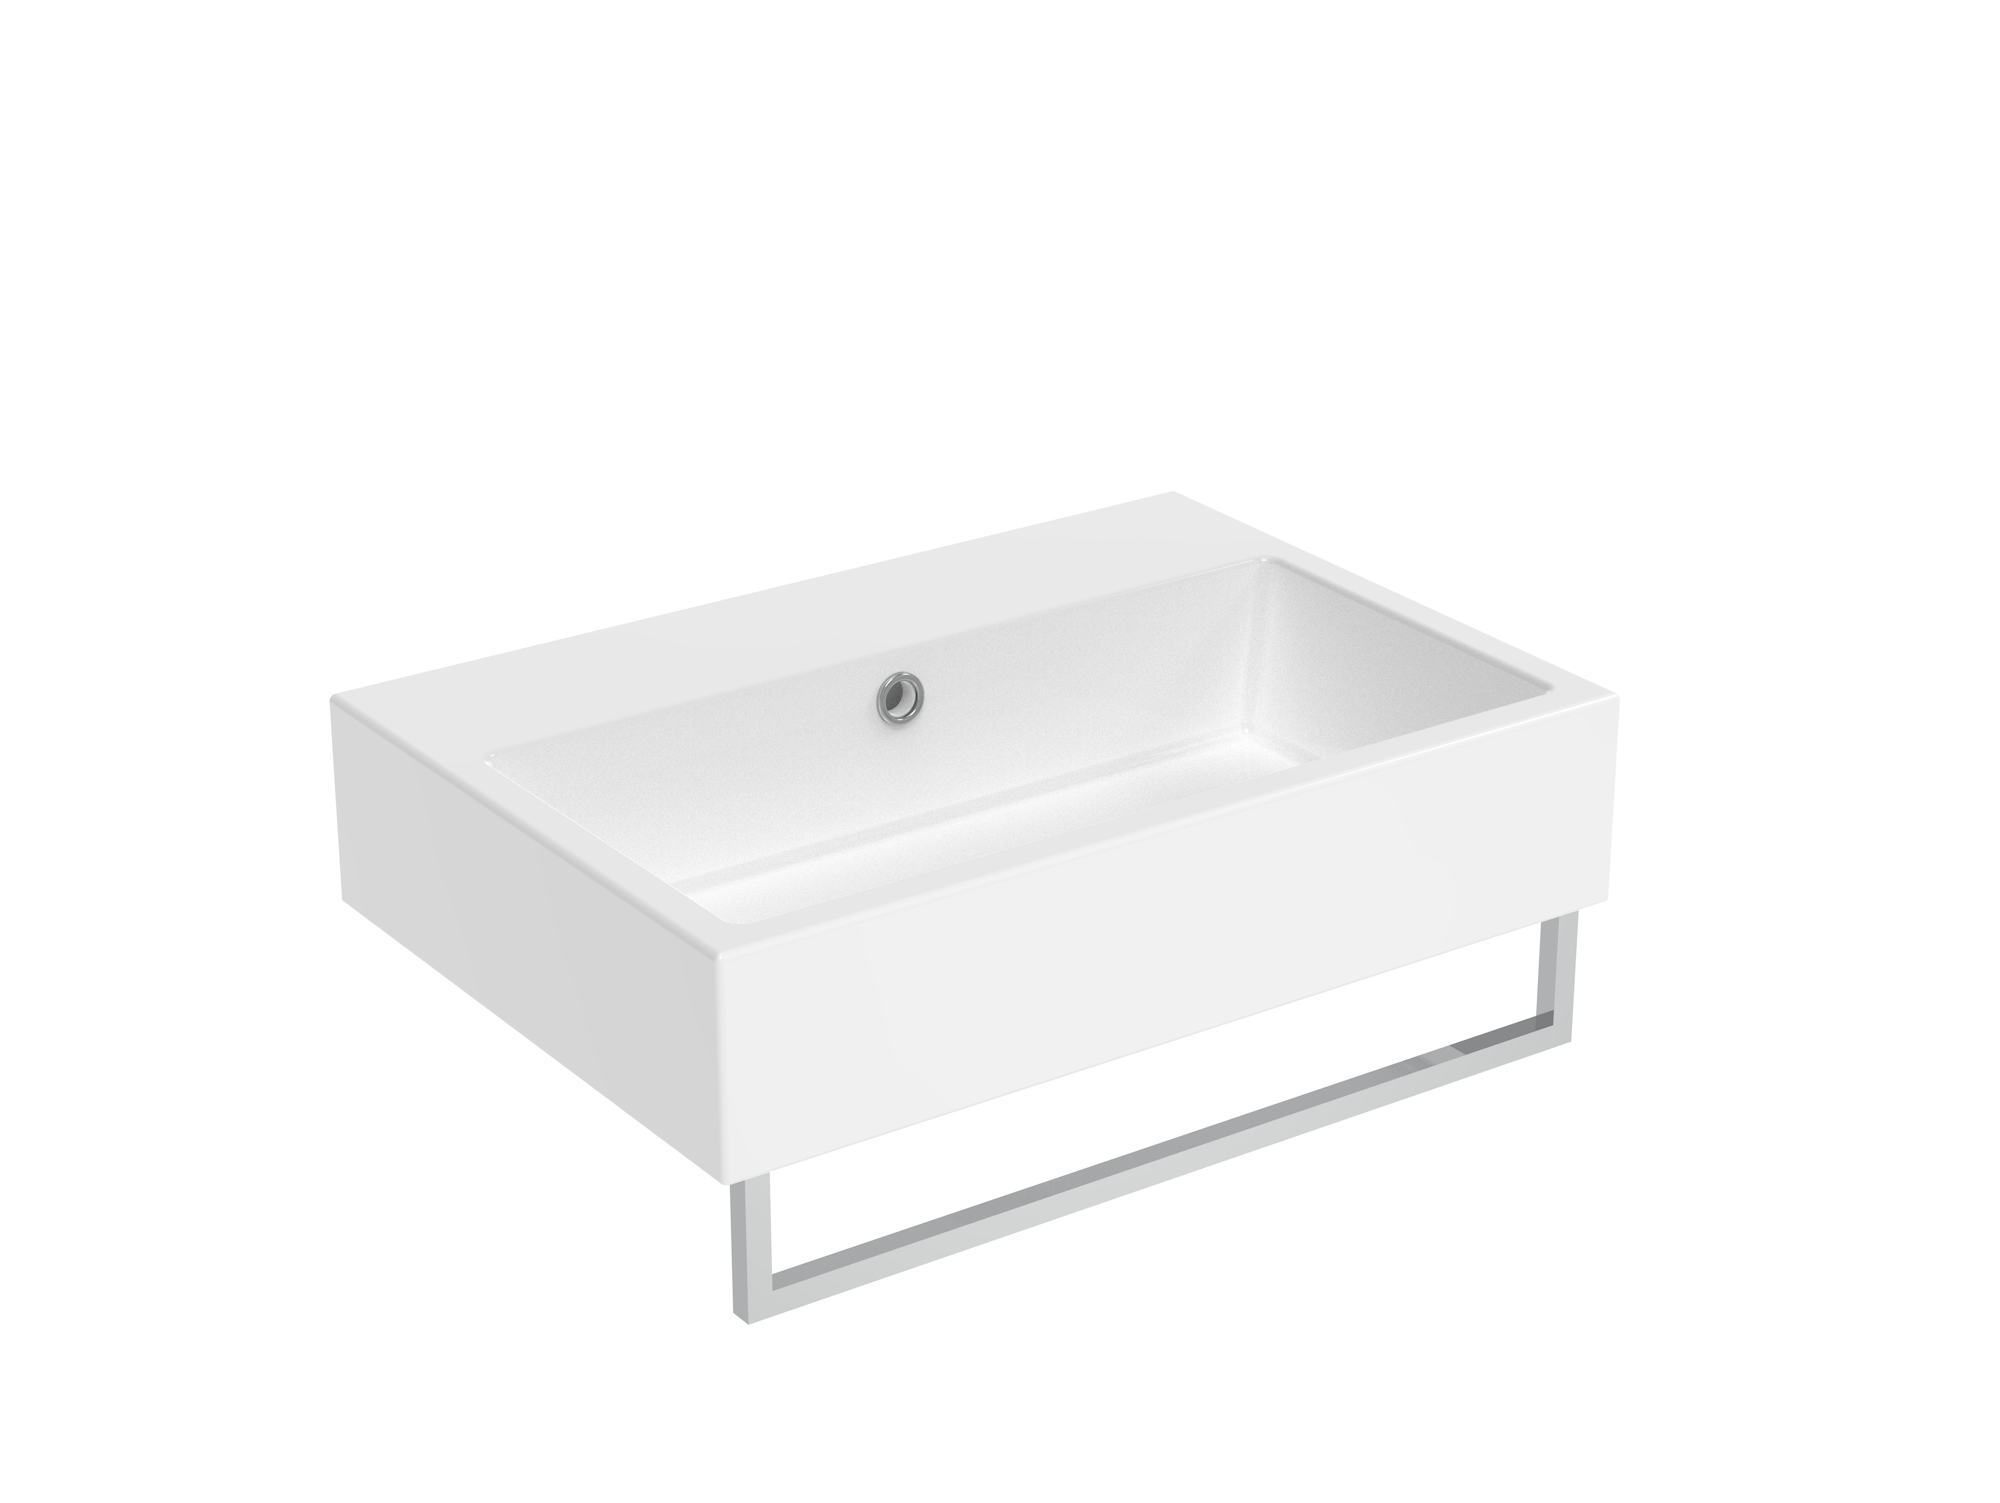 MATTEO 60x42cm washbasin 0TH - Gloss White